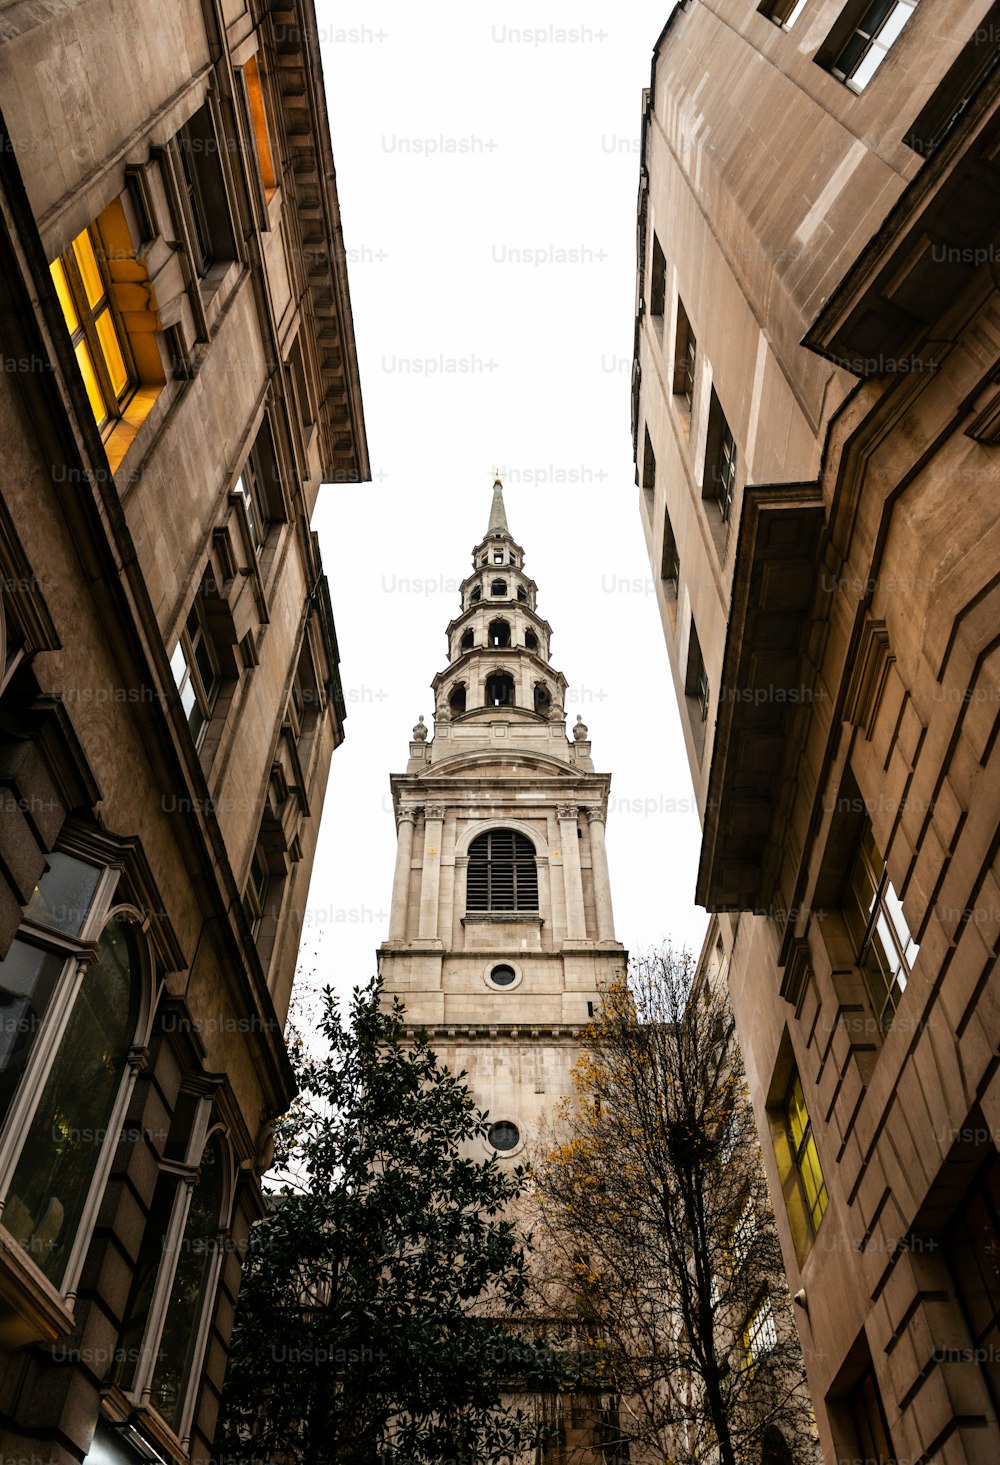 Torre de la iglesia de St Bride, una de las iglesias más antiguas de Londres, vista a través de una calle estrecha.